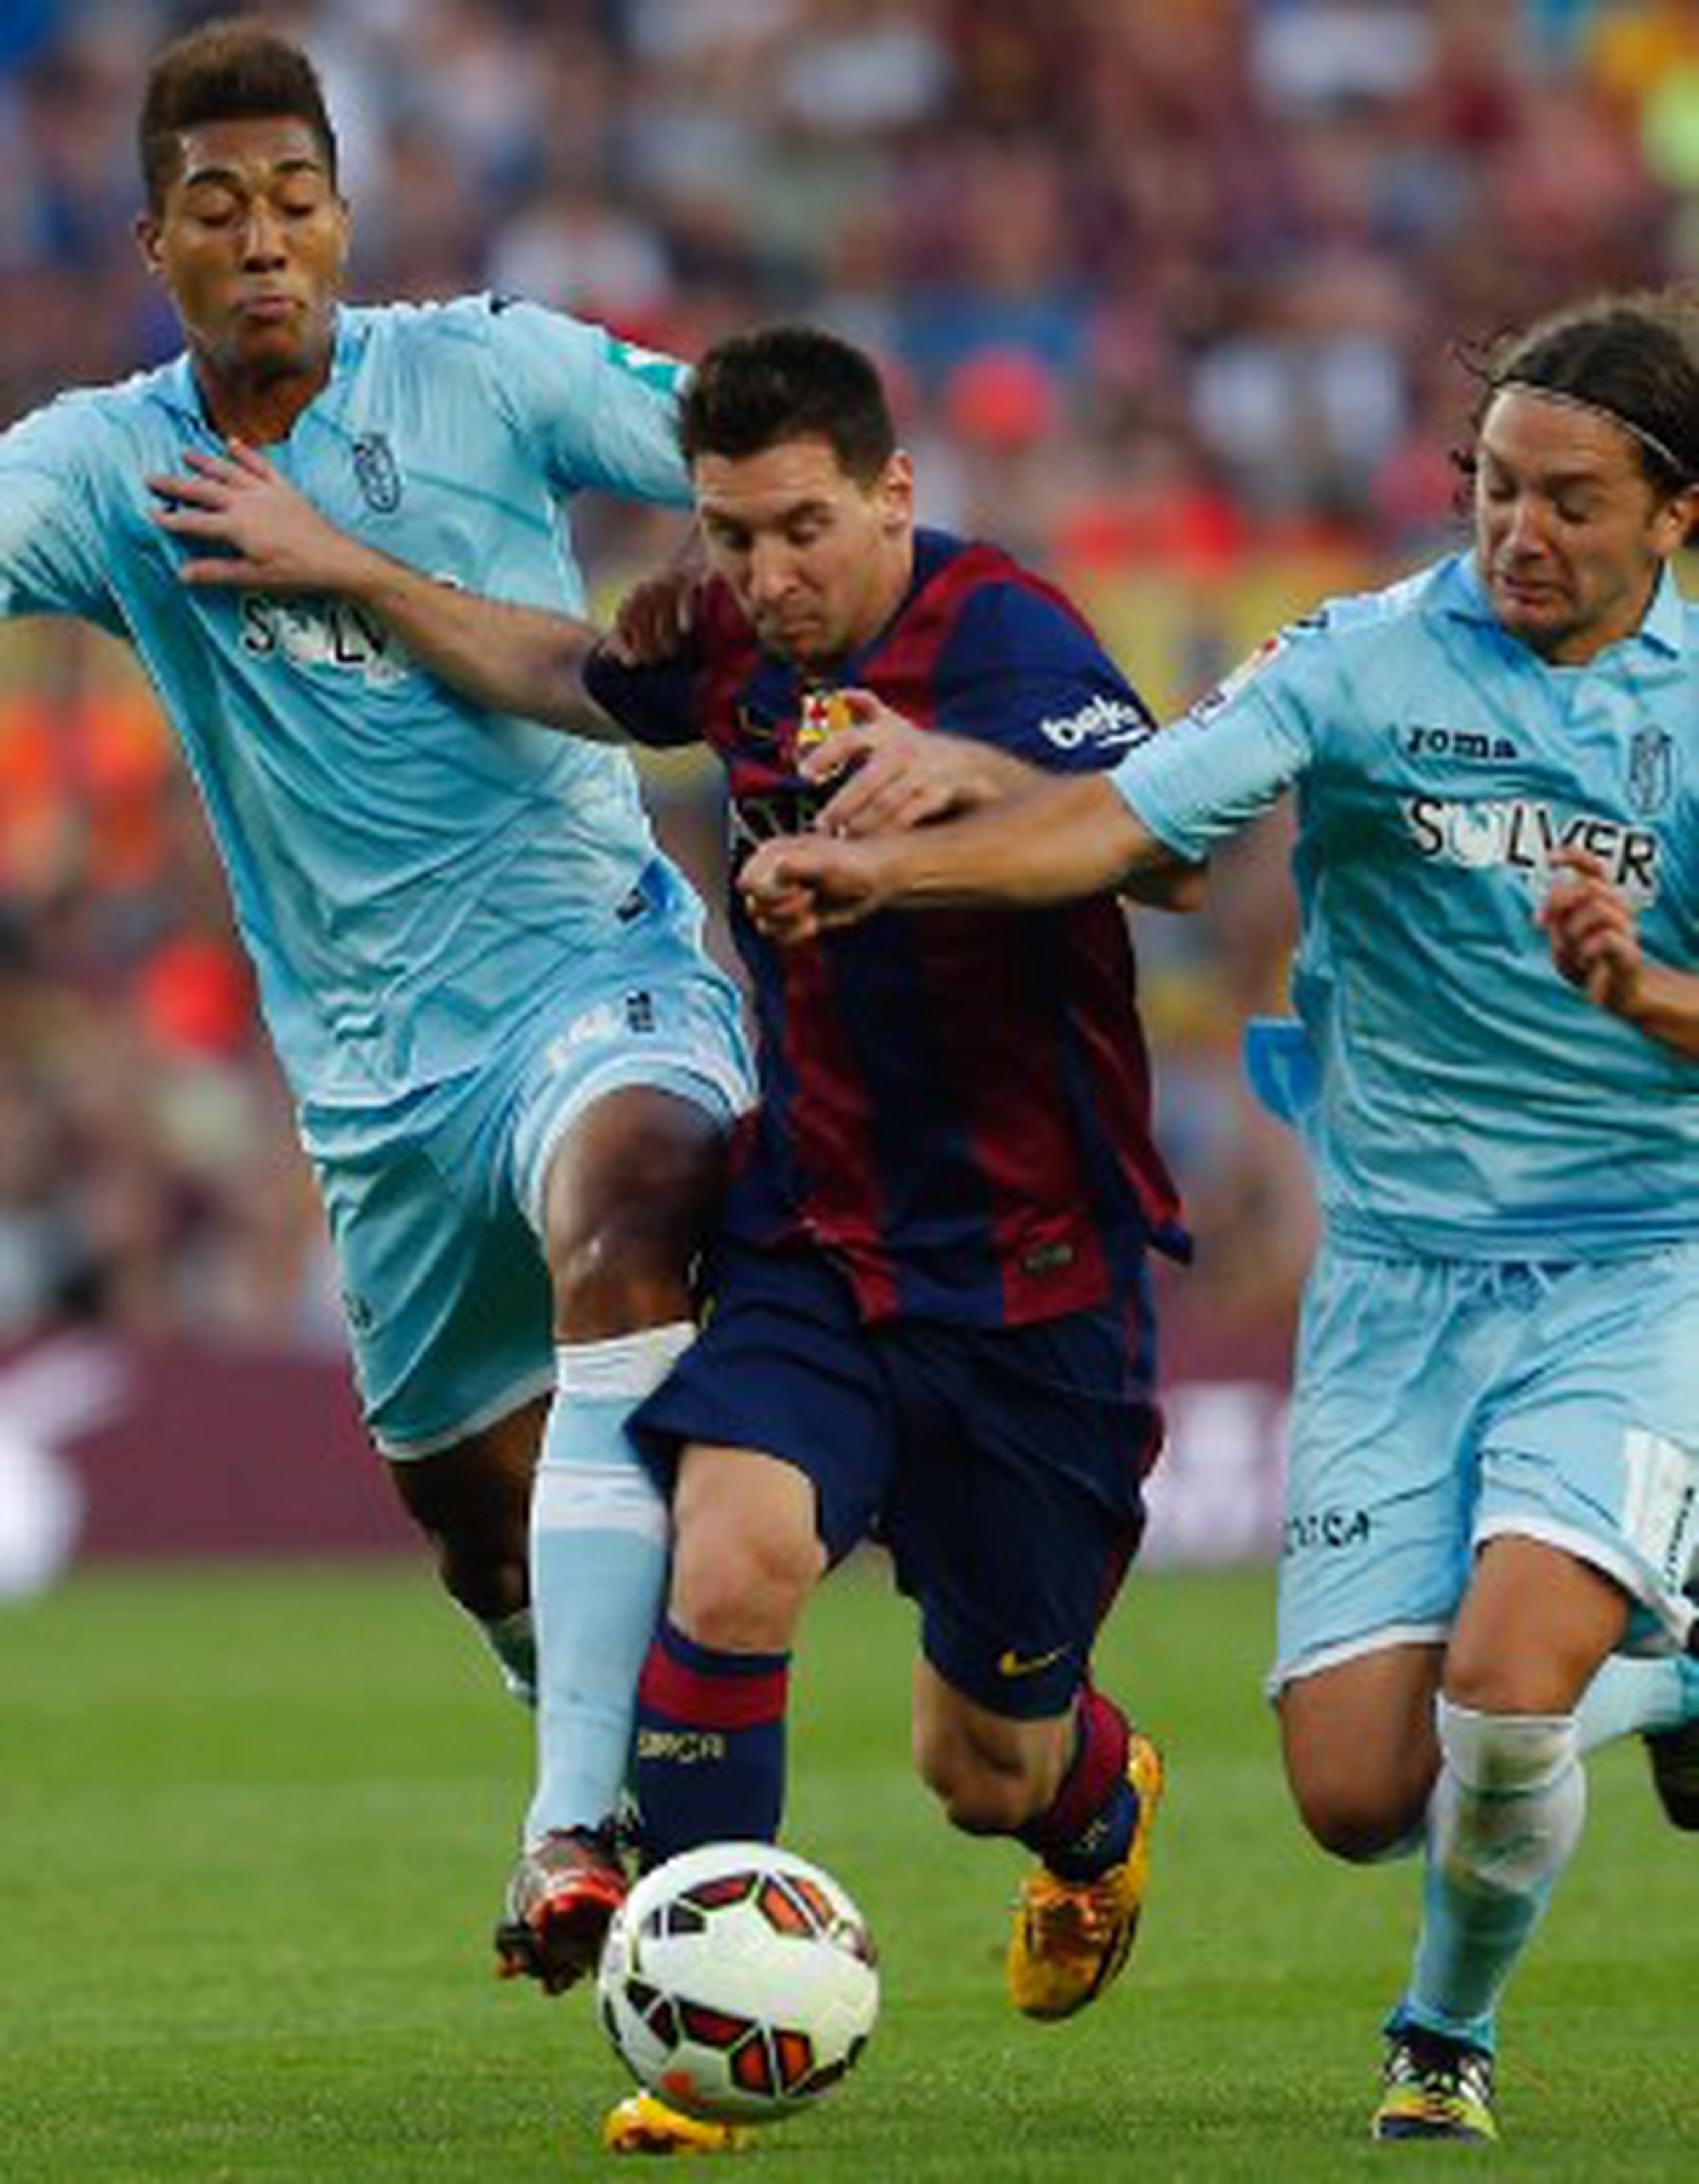 El argentino Lionel Messi, al centro, lucha por el control del balón contra Eddy Silvestre, a la izquierda, y Manuel Iturra, del Granda durante su encuentro del sábado. (AP / Emilio Morenatti)